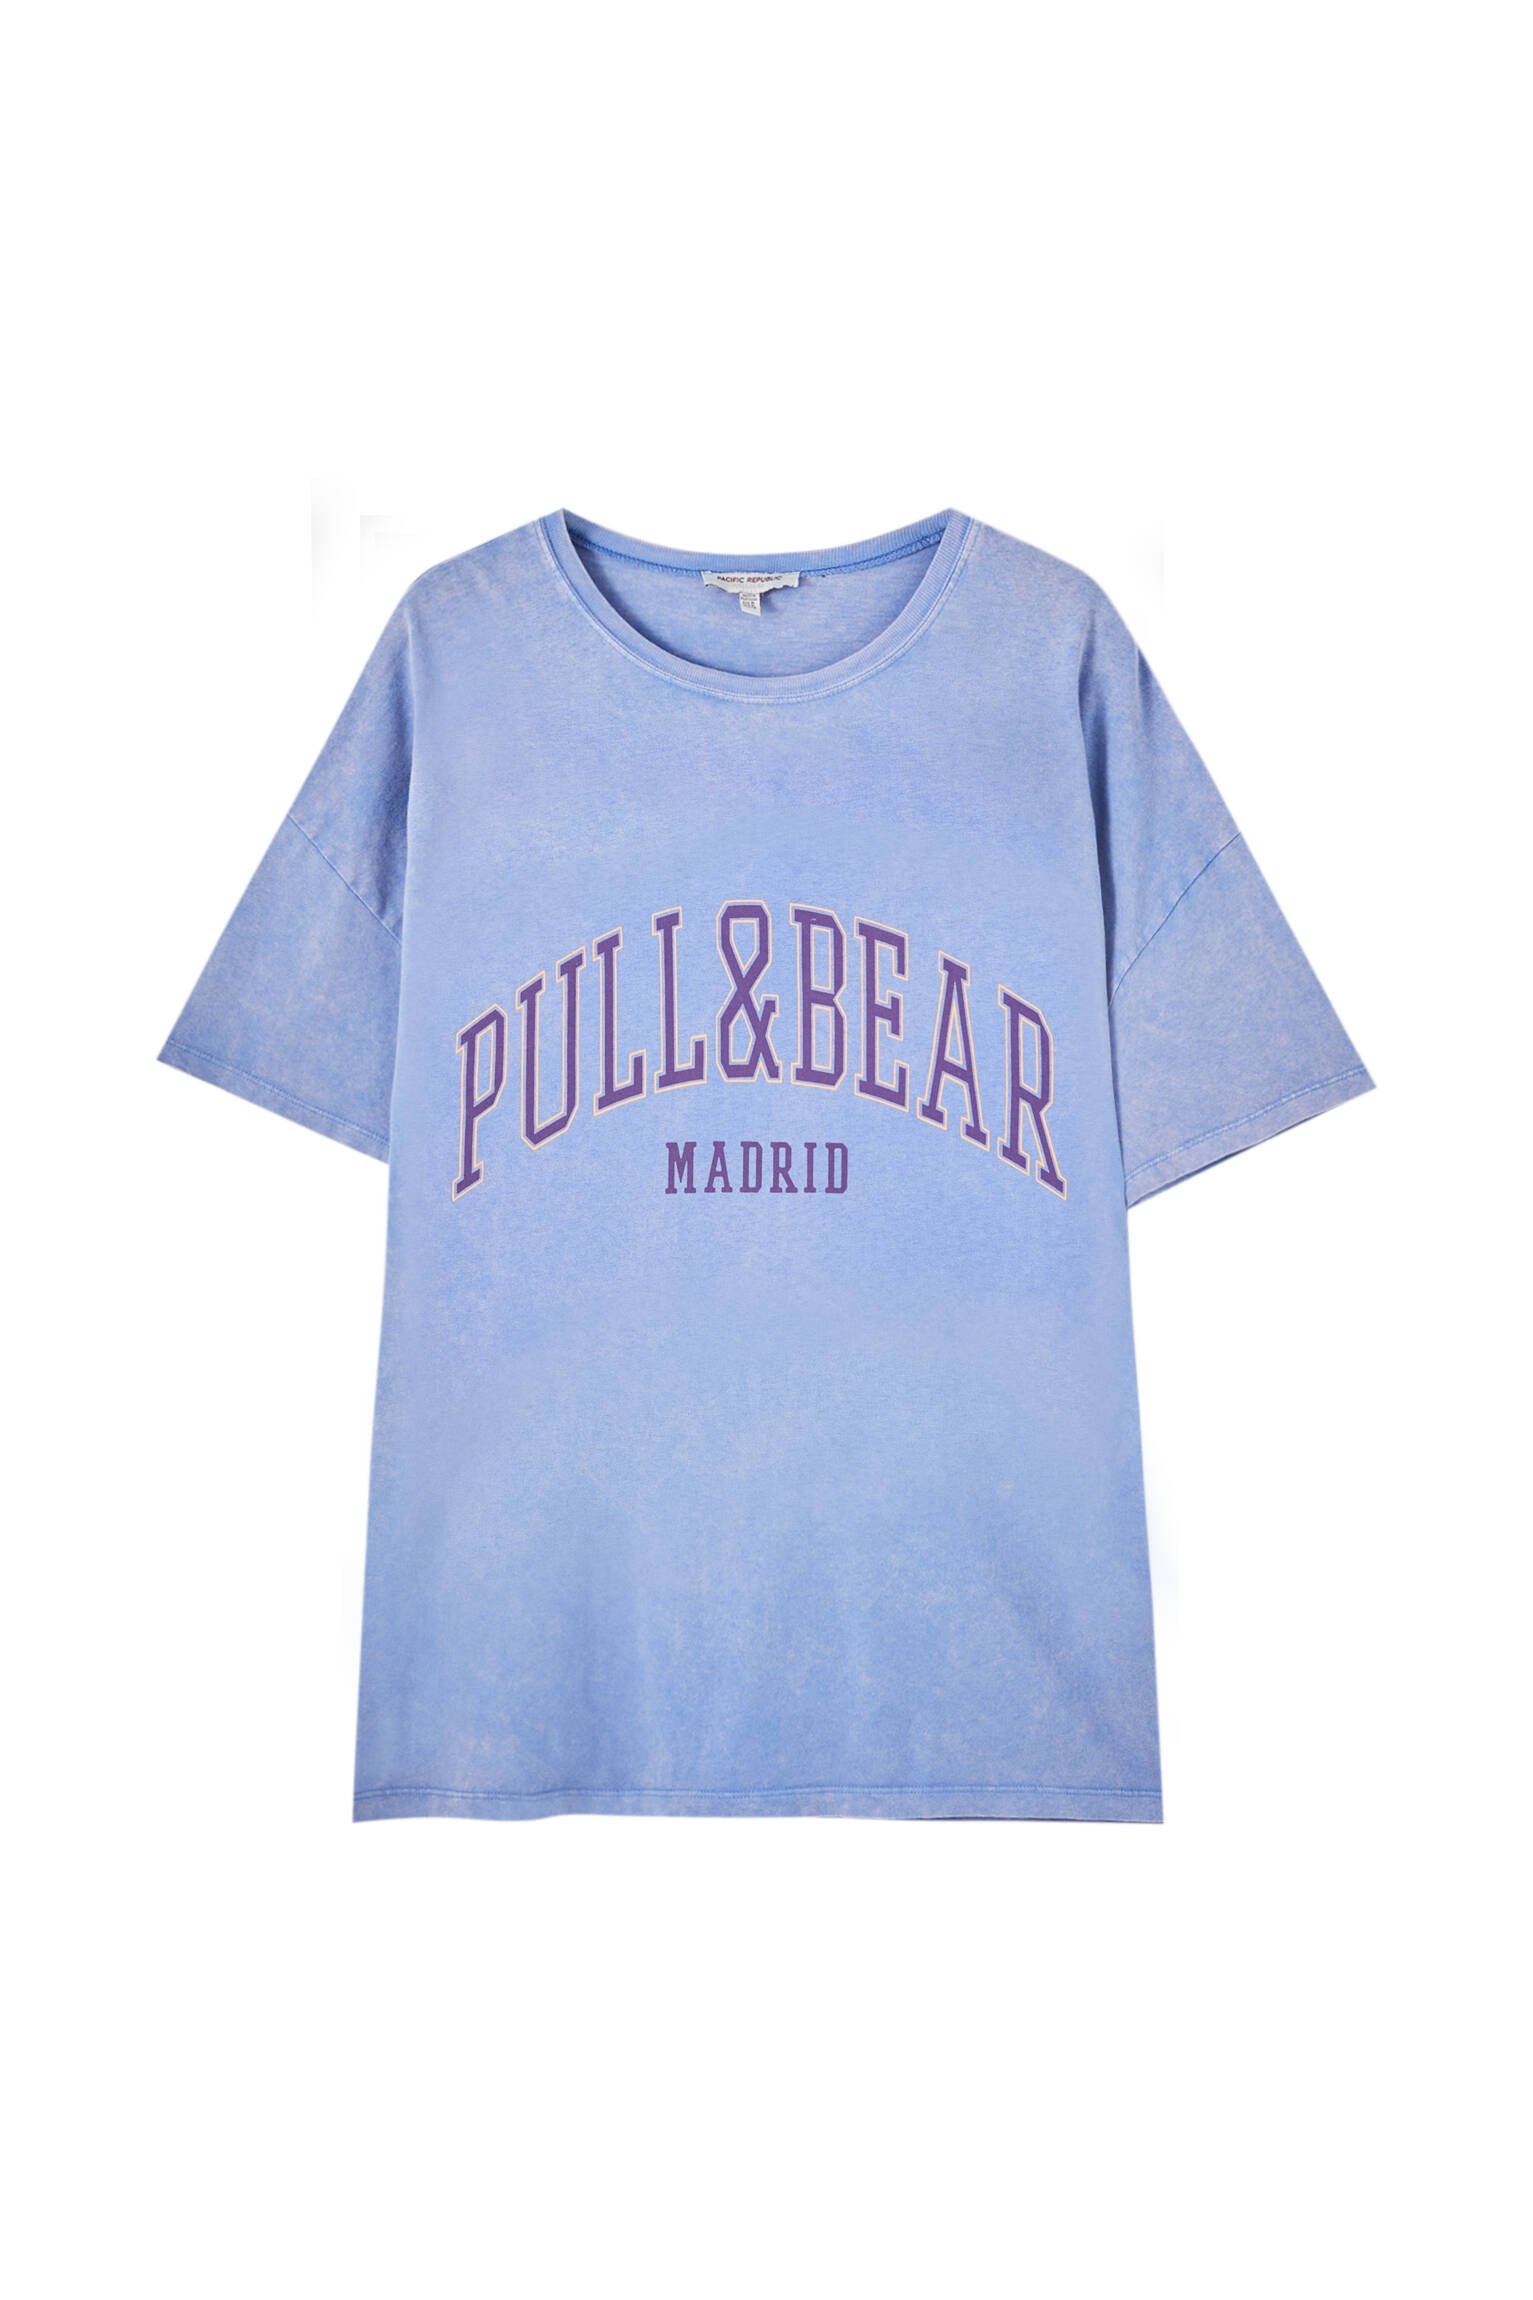 Pull&bear Femme T-shirt 100 % Coton à Col Rond Et Manches Courtes, Avec Logo Pull&bear Et Inscription Madrid Contrastante Sur La Poitrine. Indigo DÉlavÉ S